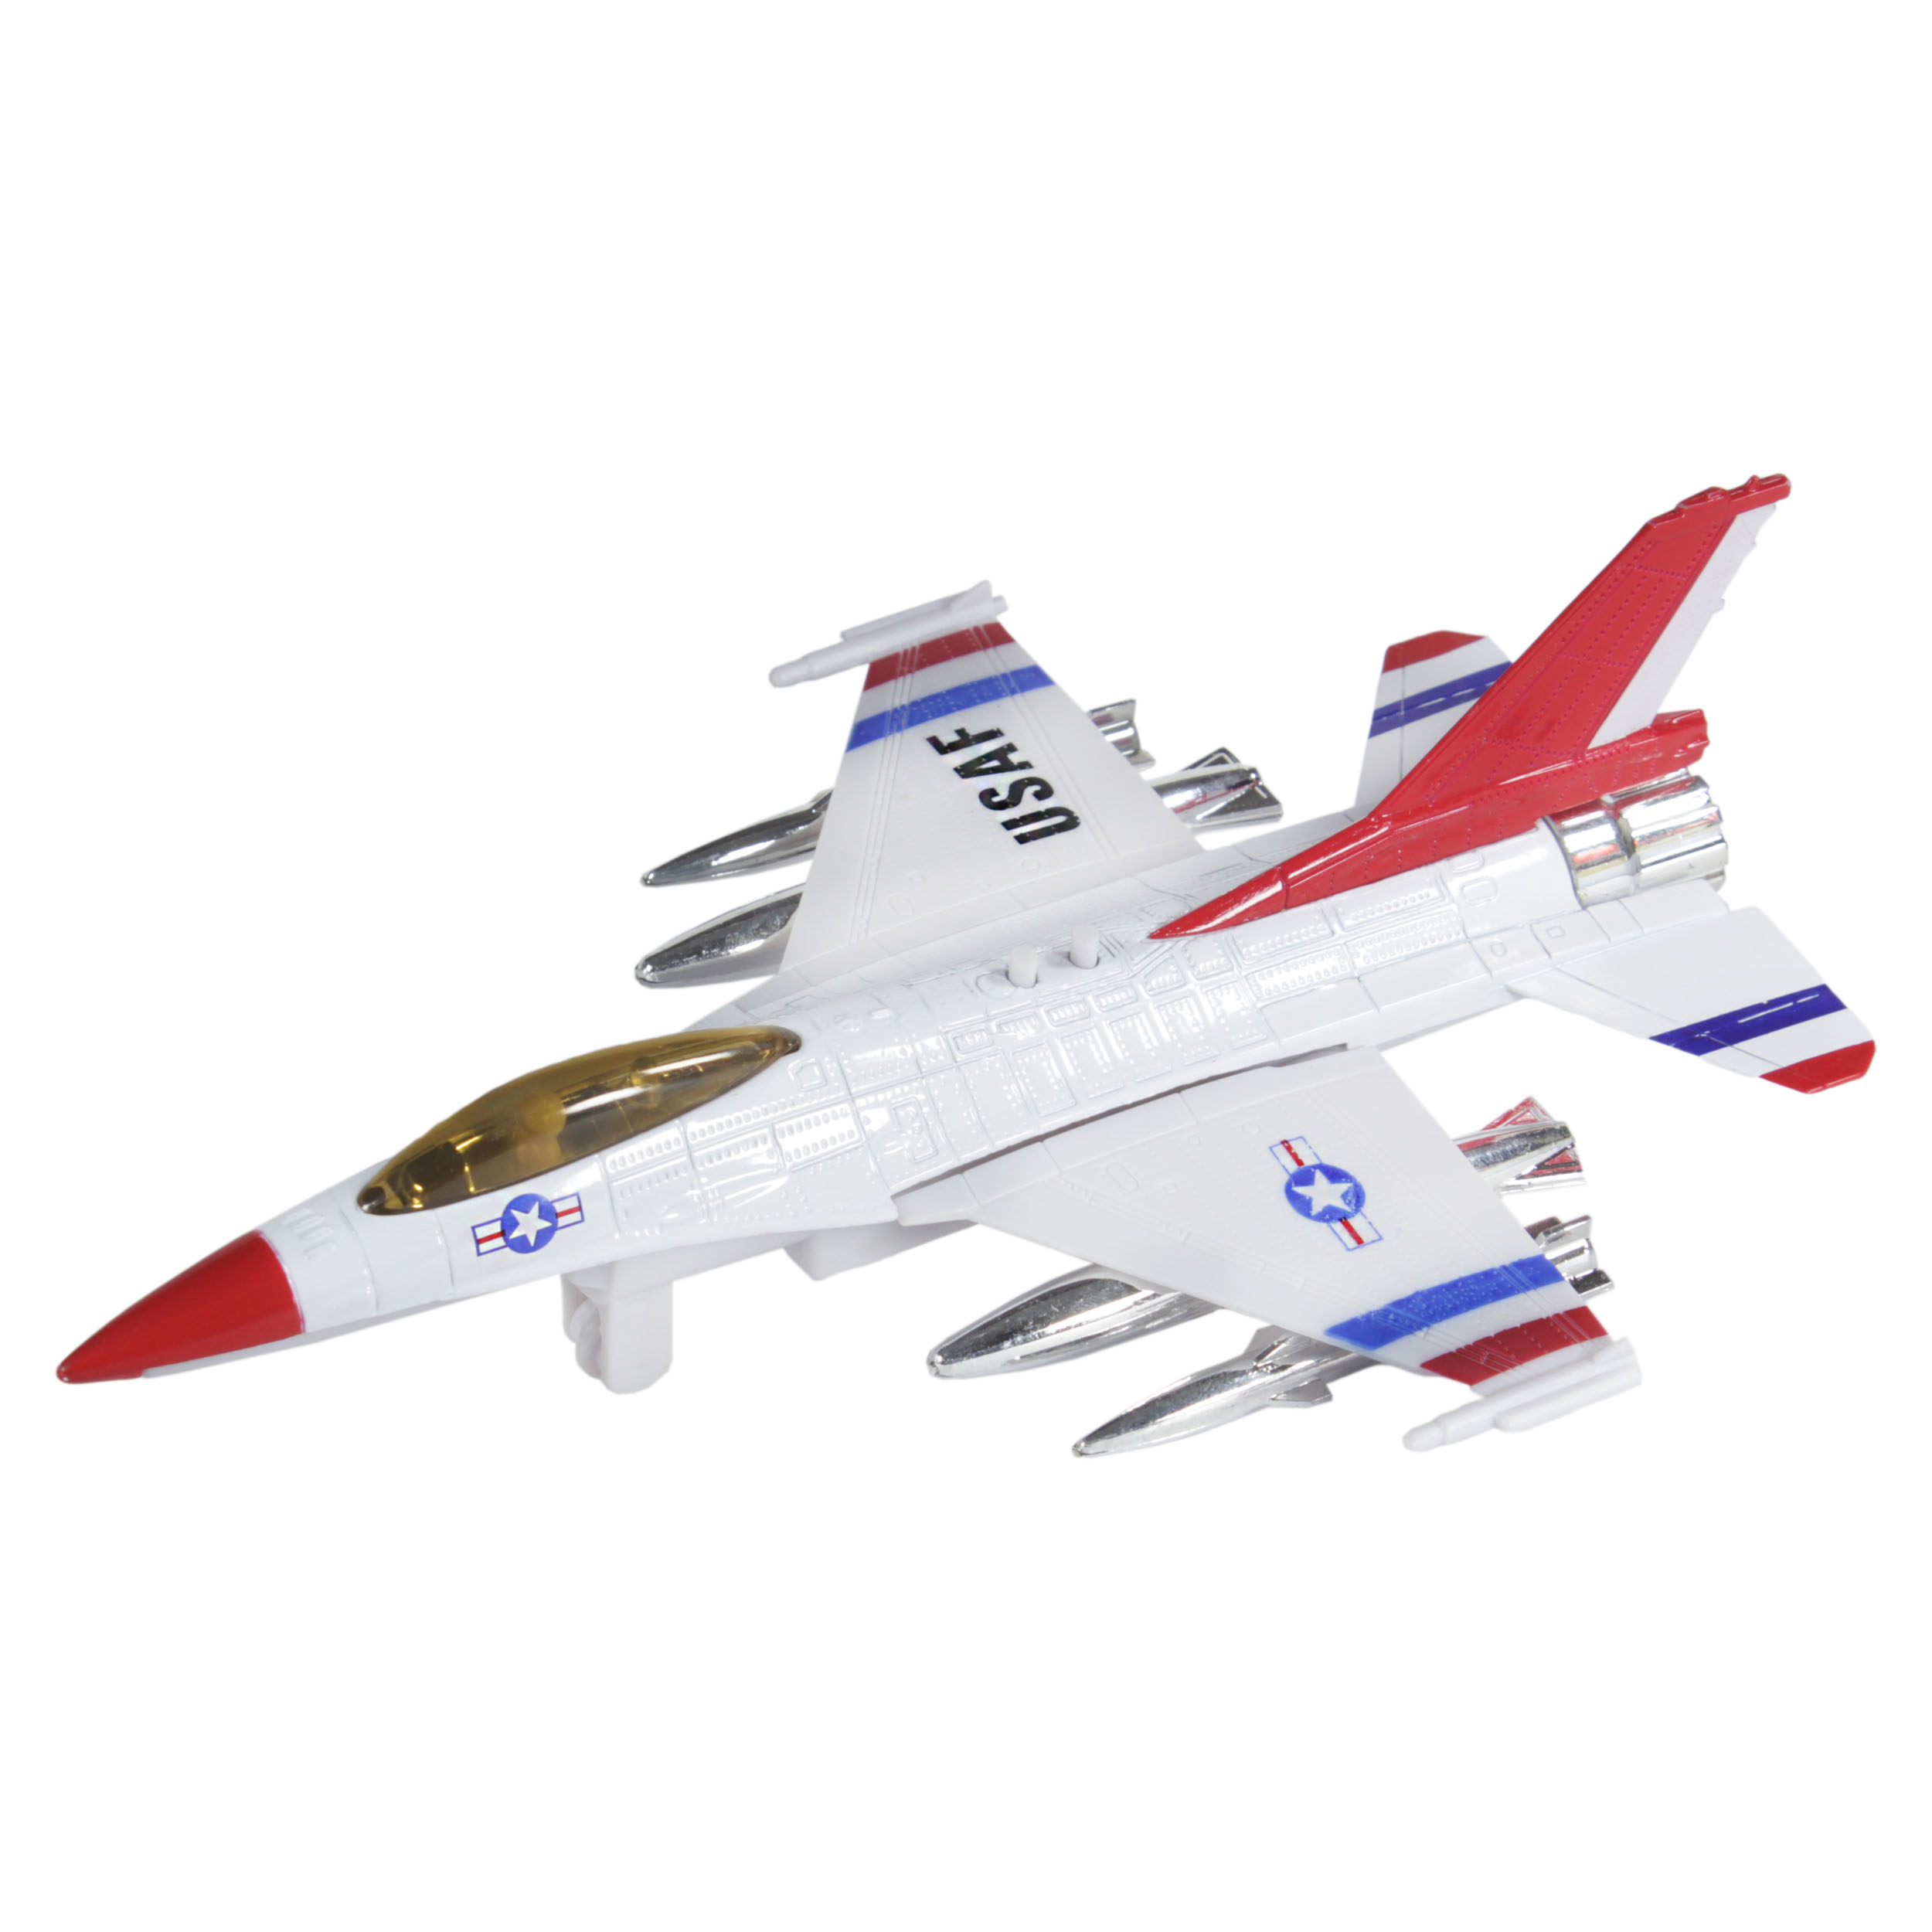 هواپیما بازی مدل F16 فالکون کد 0014